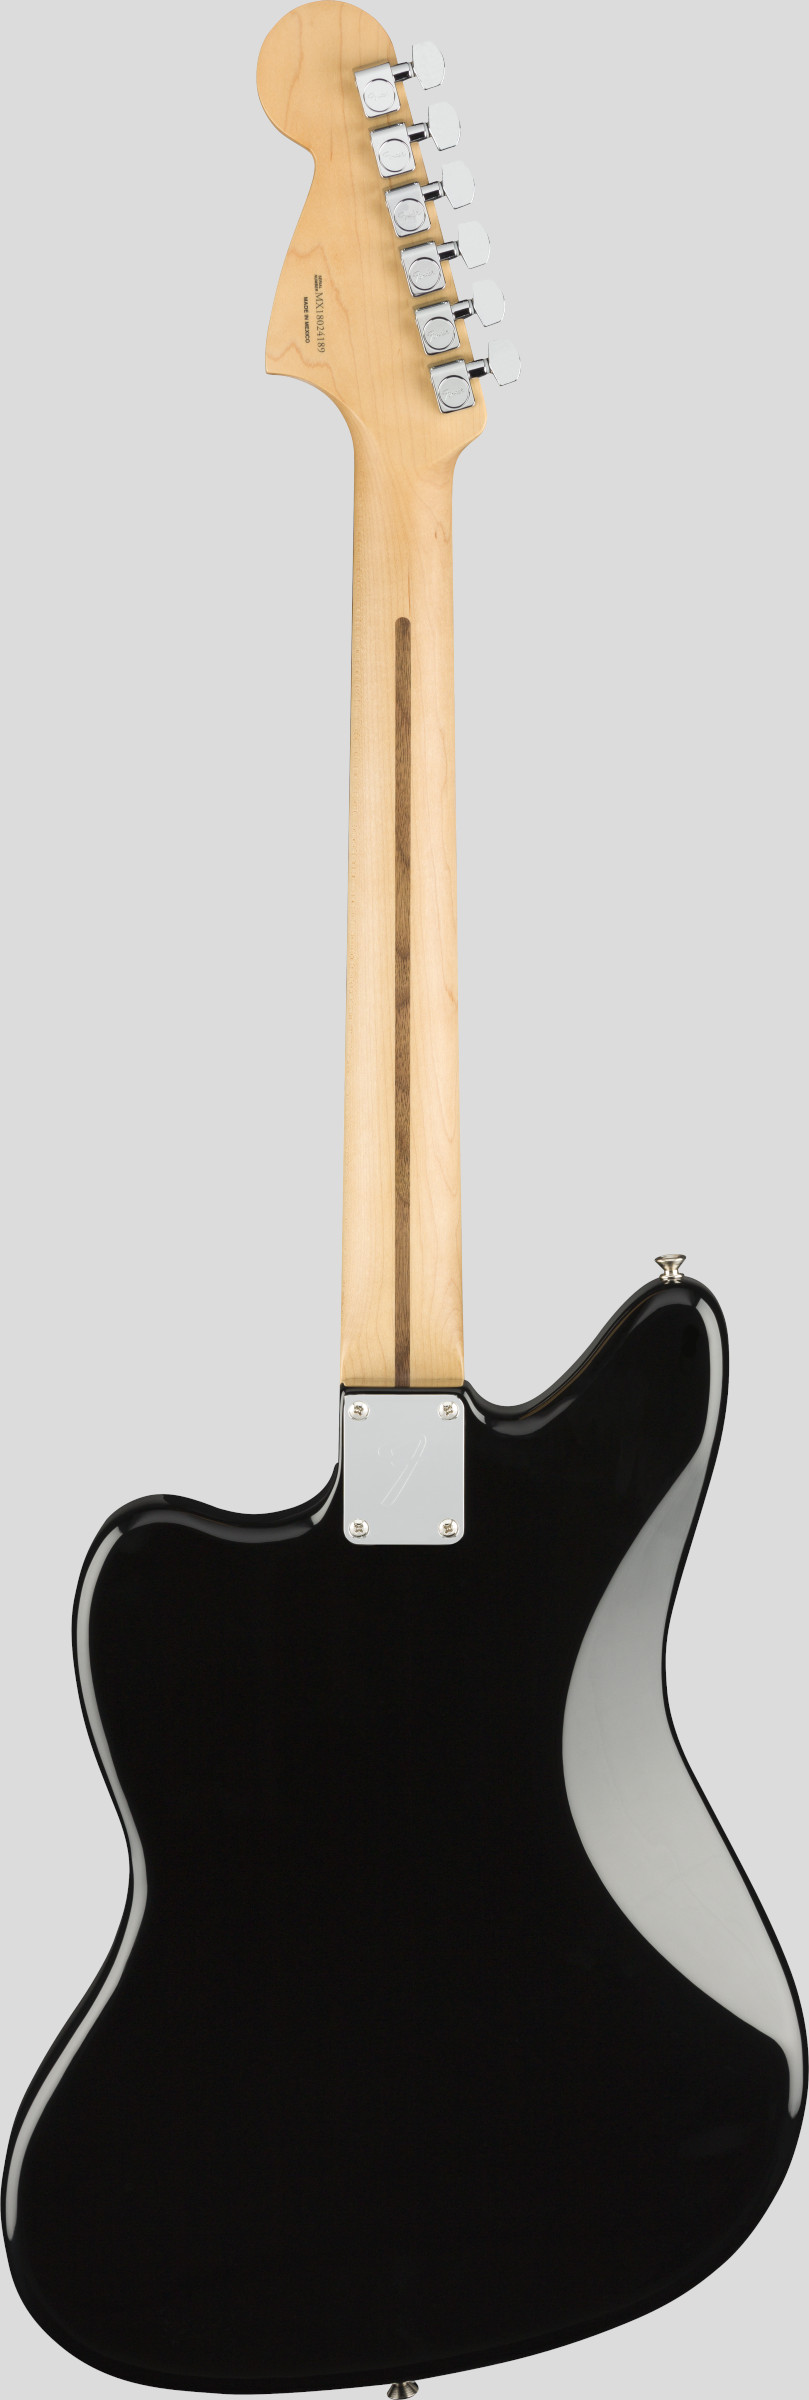 Fender Player Jaguar Black 2